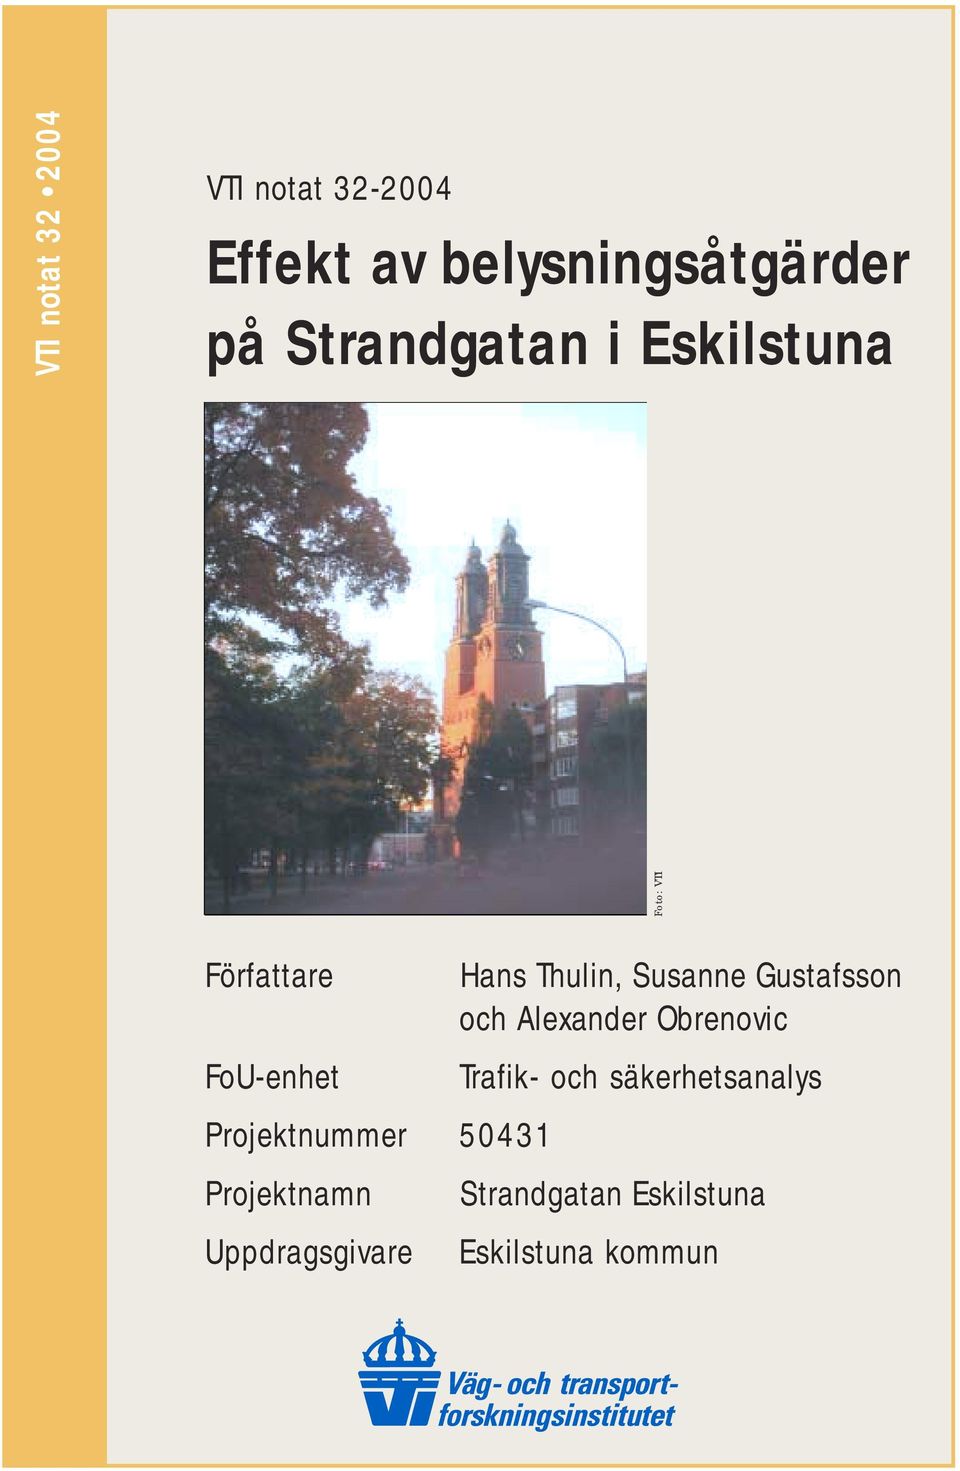 50431 Projektnamn Uppdragsgivare Hans Thulin, Susanne Gustafsson och